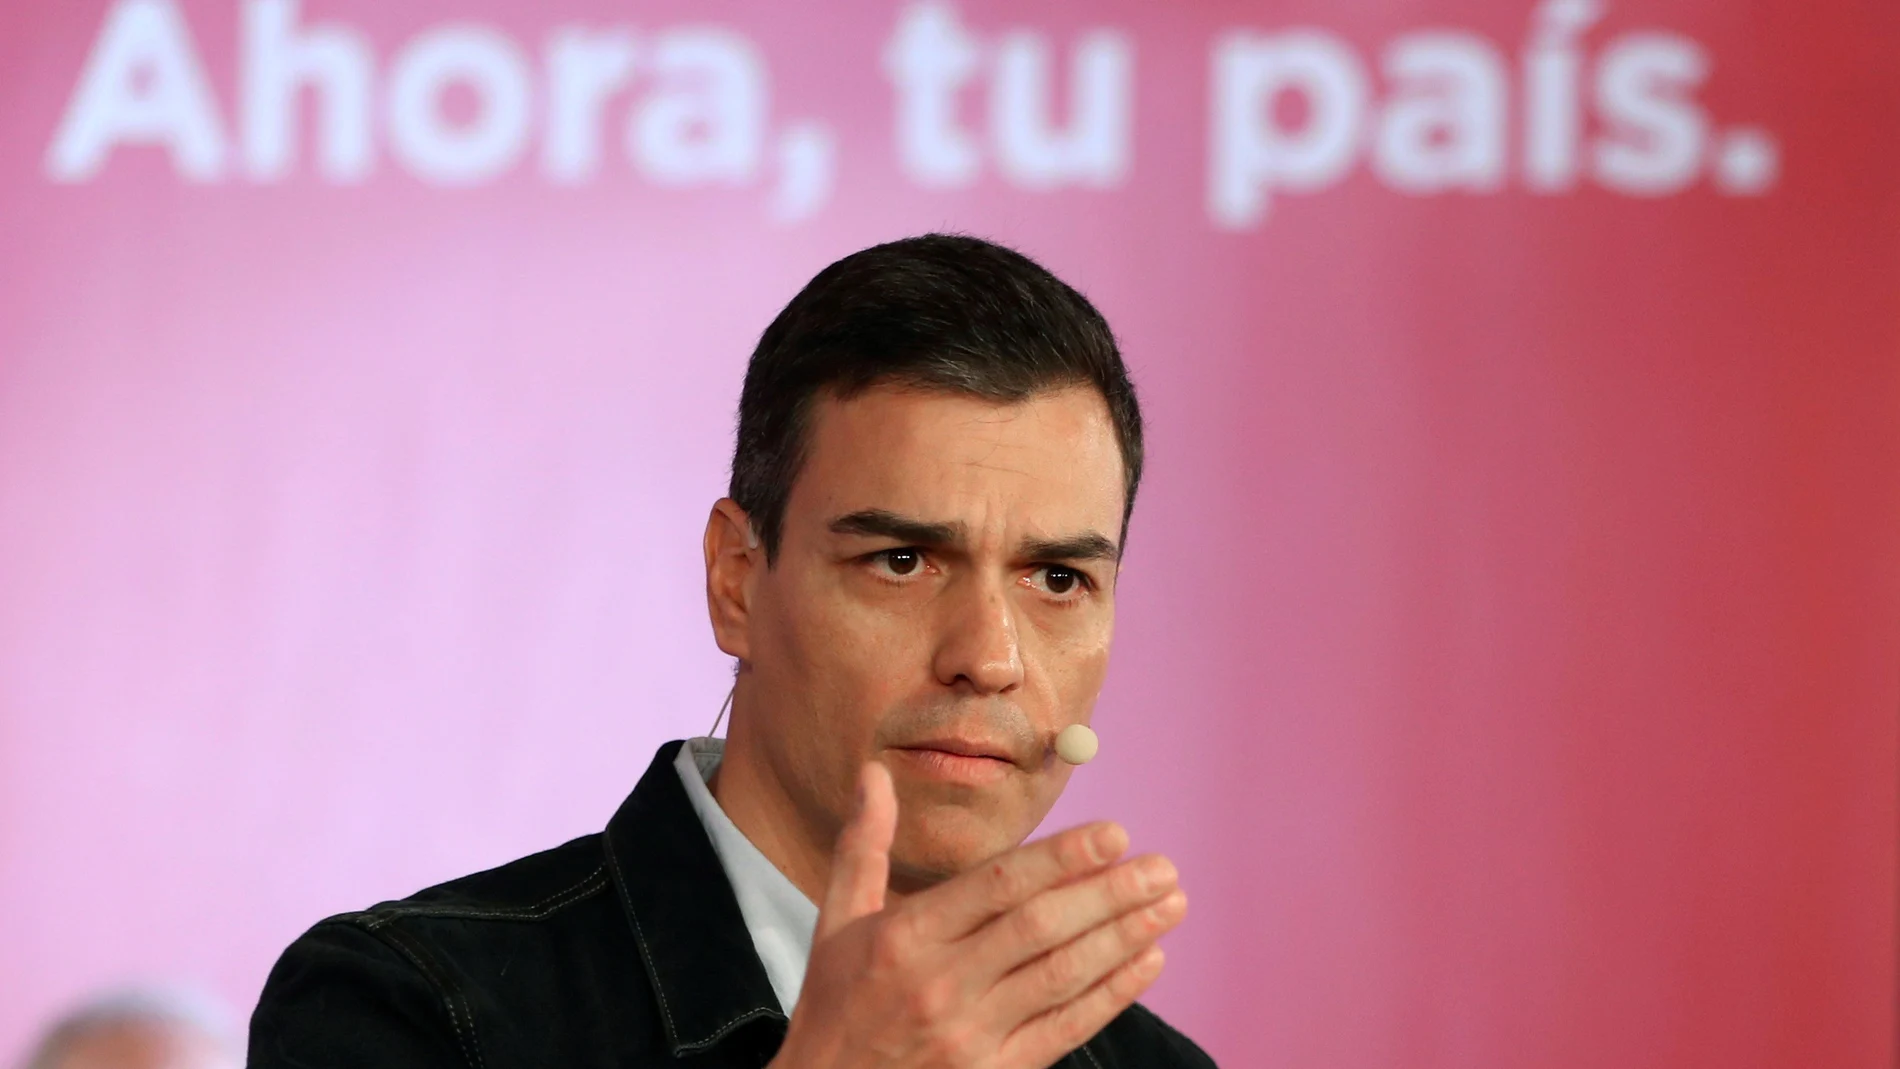 El secretario general del PSOE, Pedro Sánchez